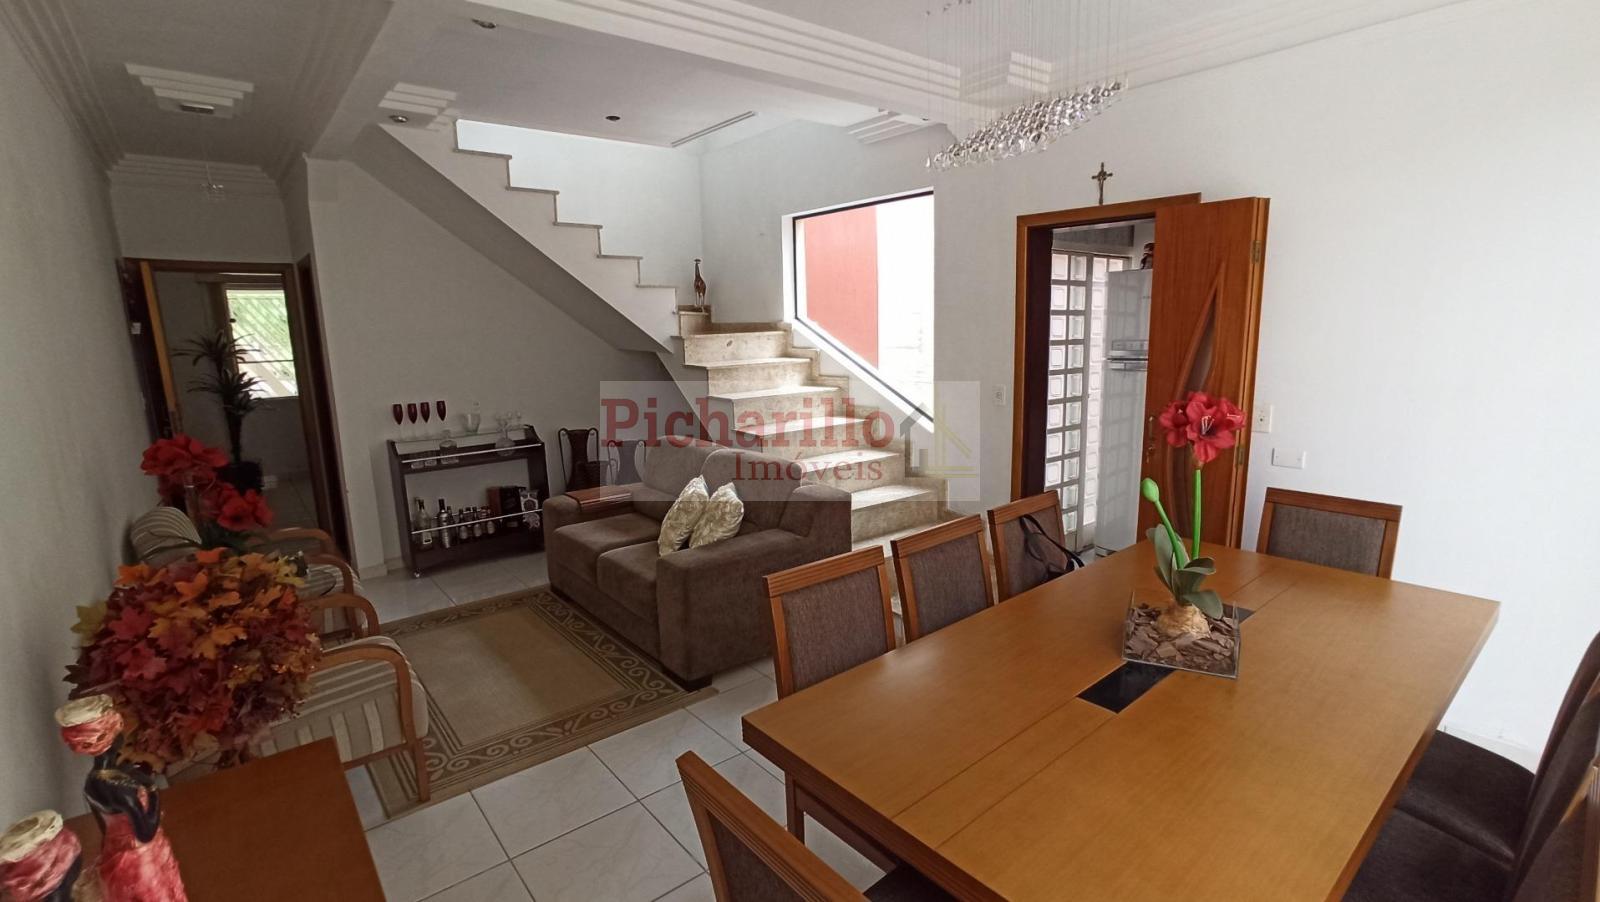 Casa com 3 dormitórios à venda, 130 m² por R$ 430.000 - Jardim Bicão - São Carlos/SP